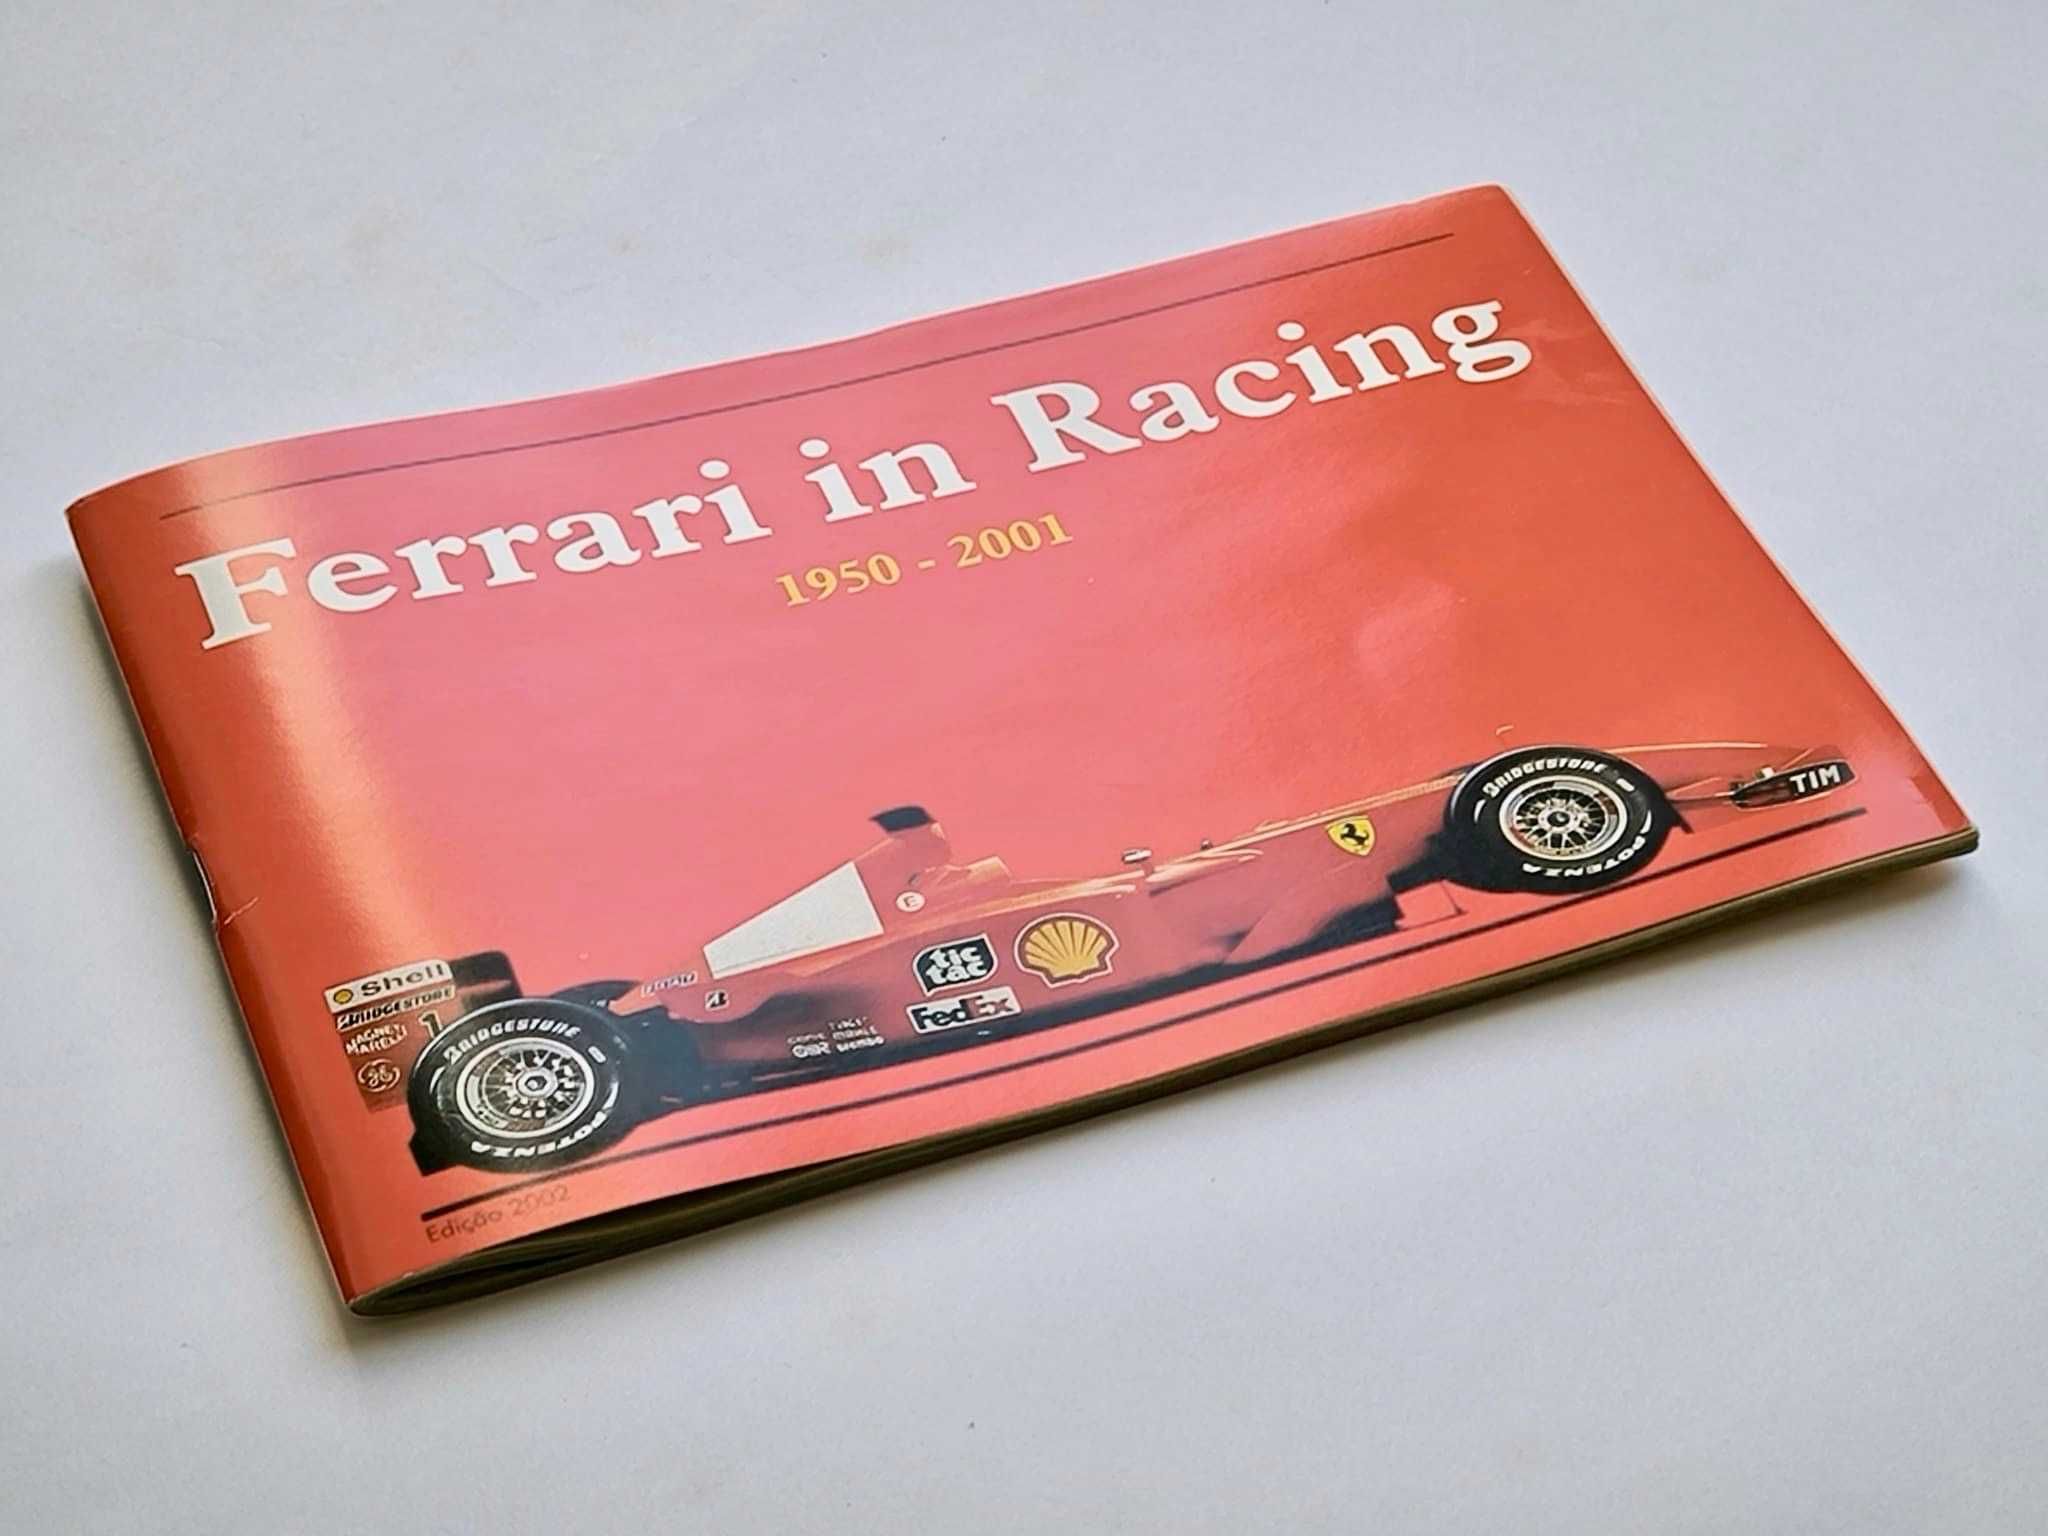 Livro "Ferrari in Racing" (em português)